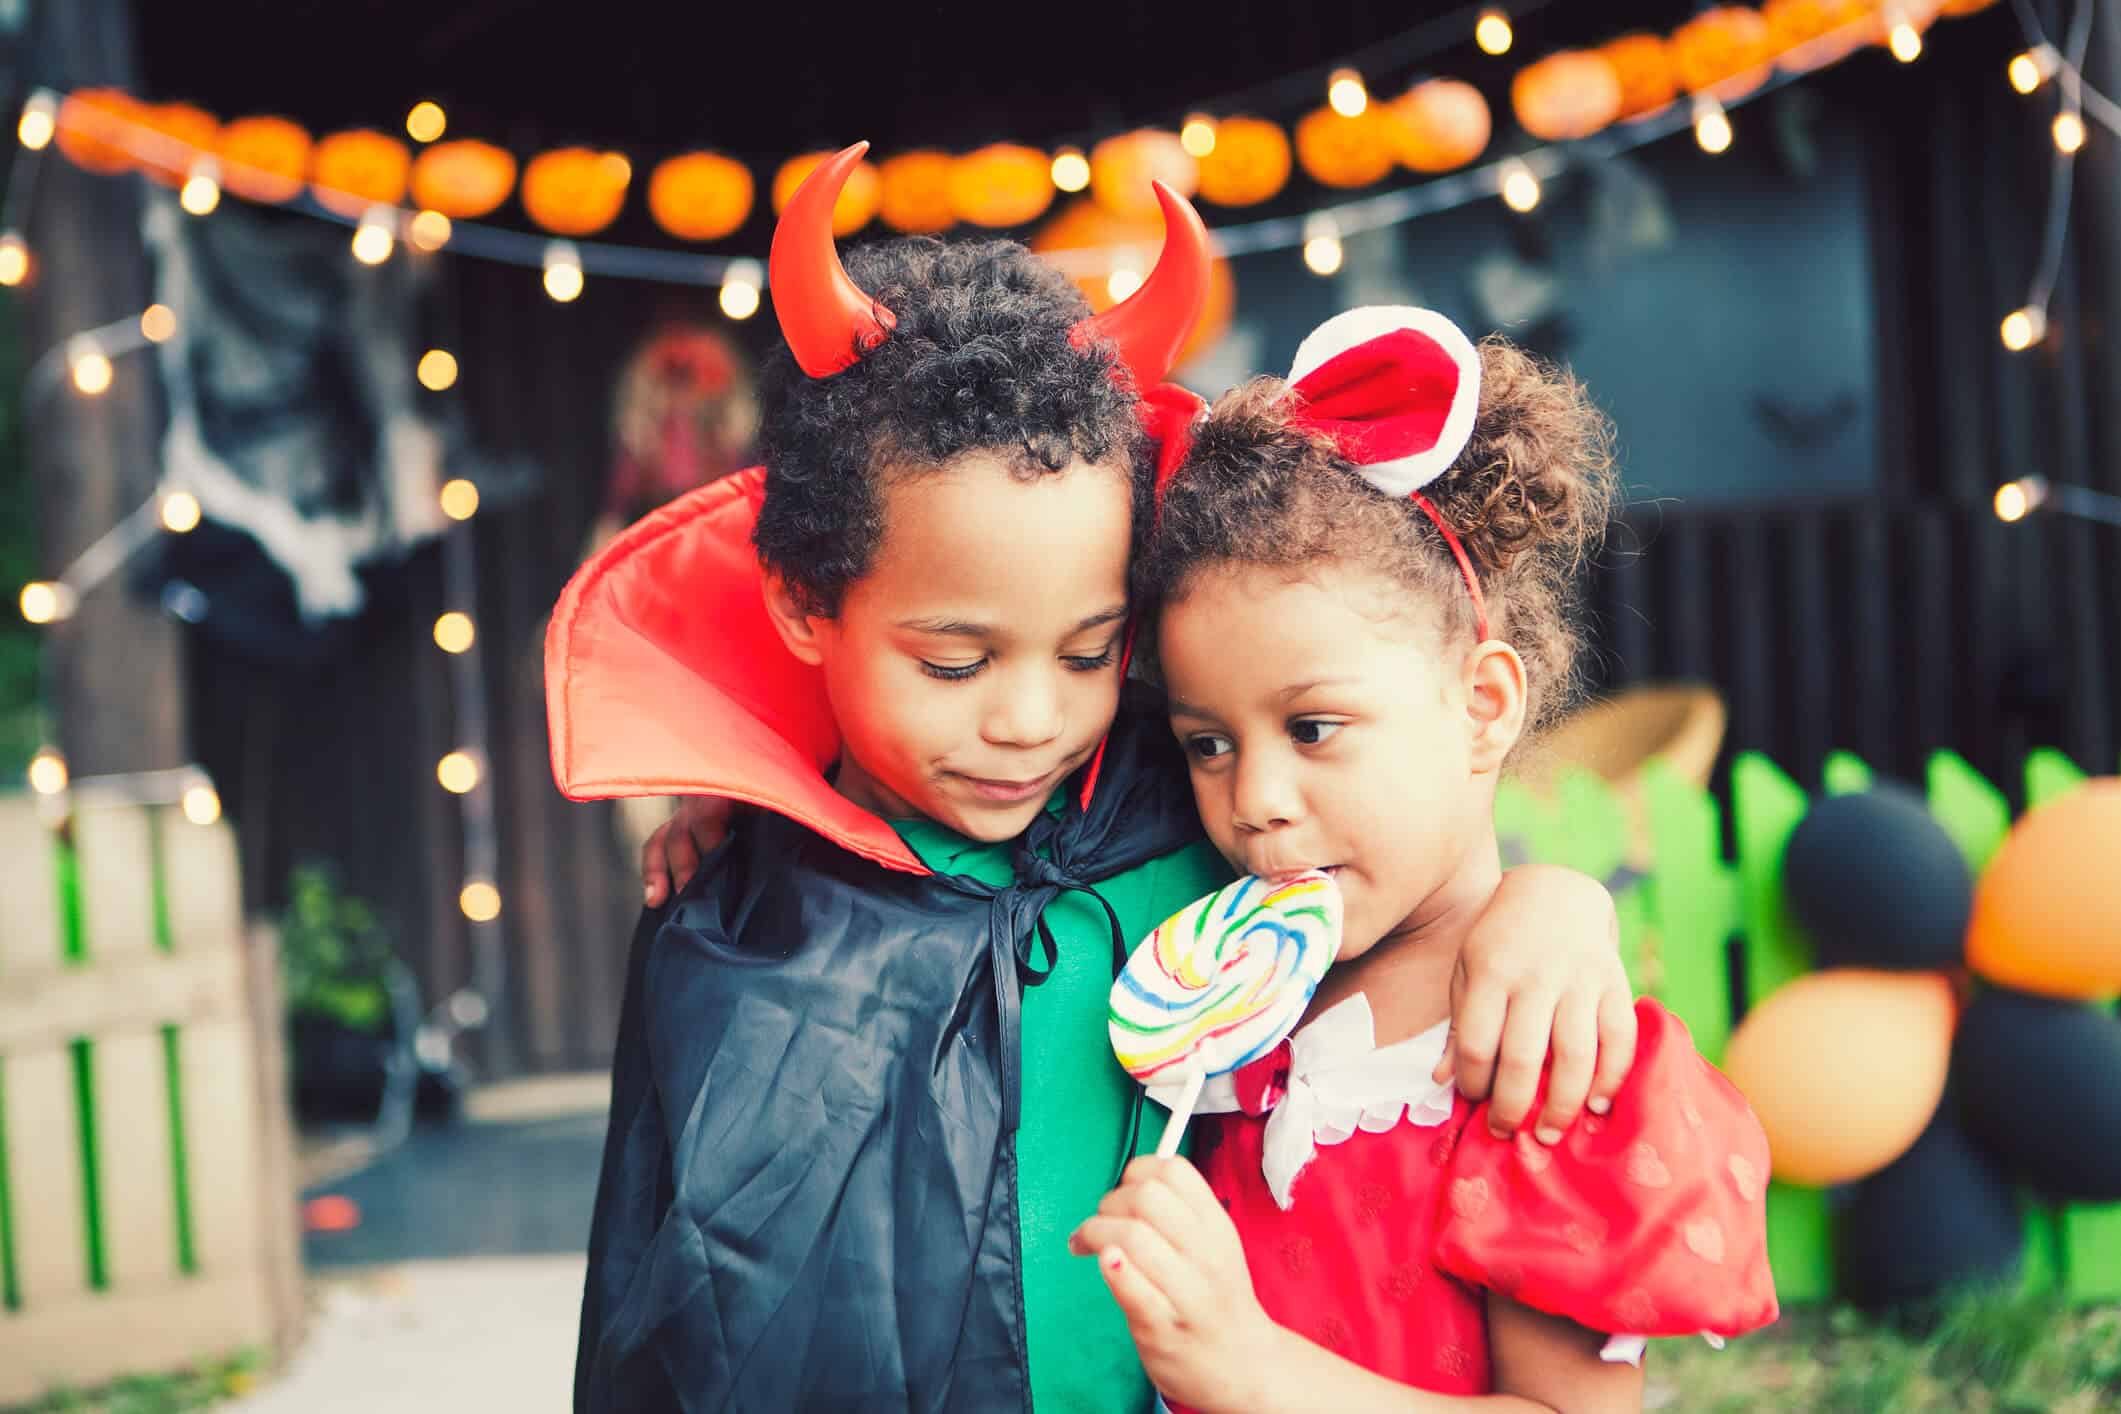 brincadeiras de halloween: crianças chupando pirulito em festa temática